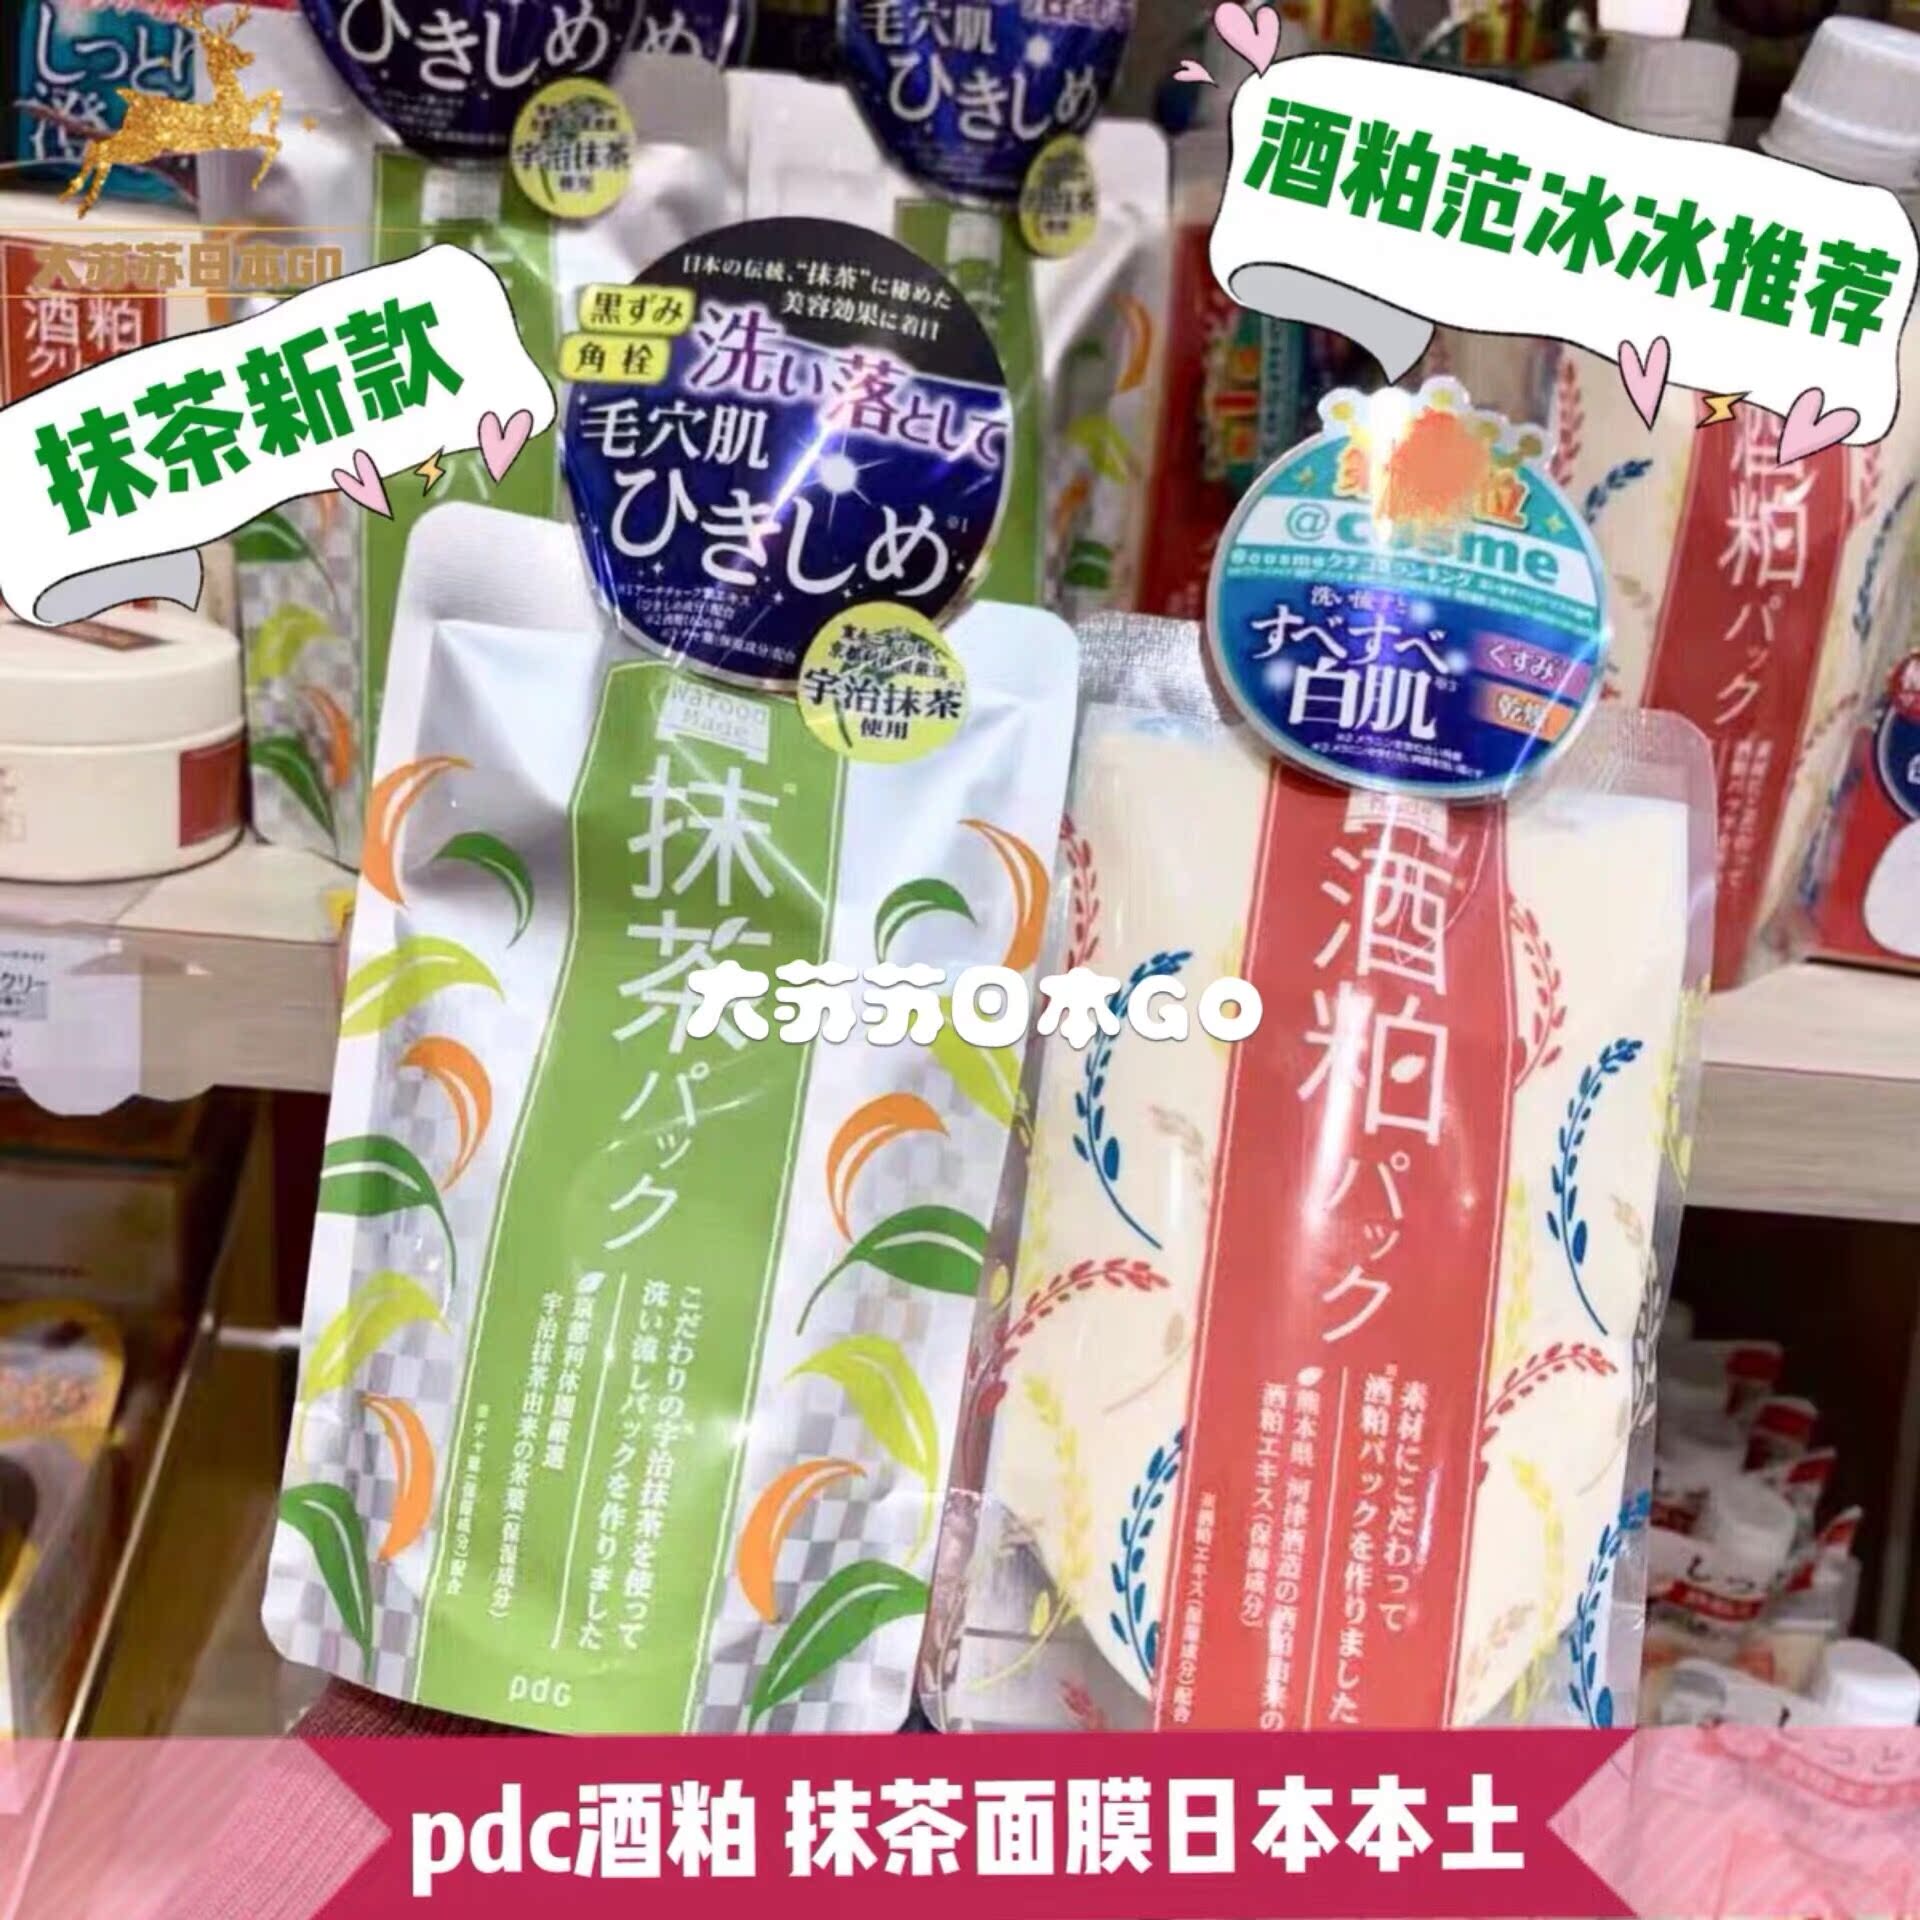 【日本本土】现货包邮日本pdc酒粕酒糟面膜提亮涂抹式170g新 抹茶